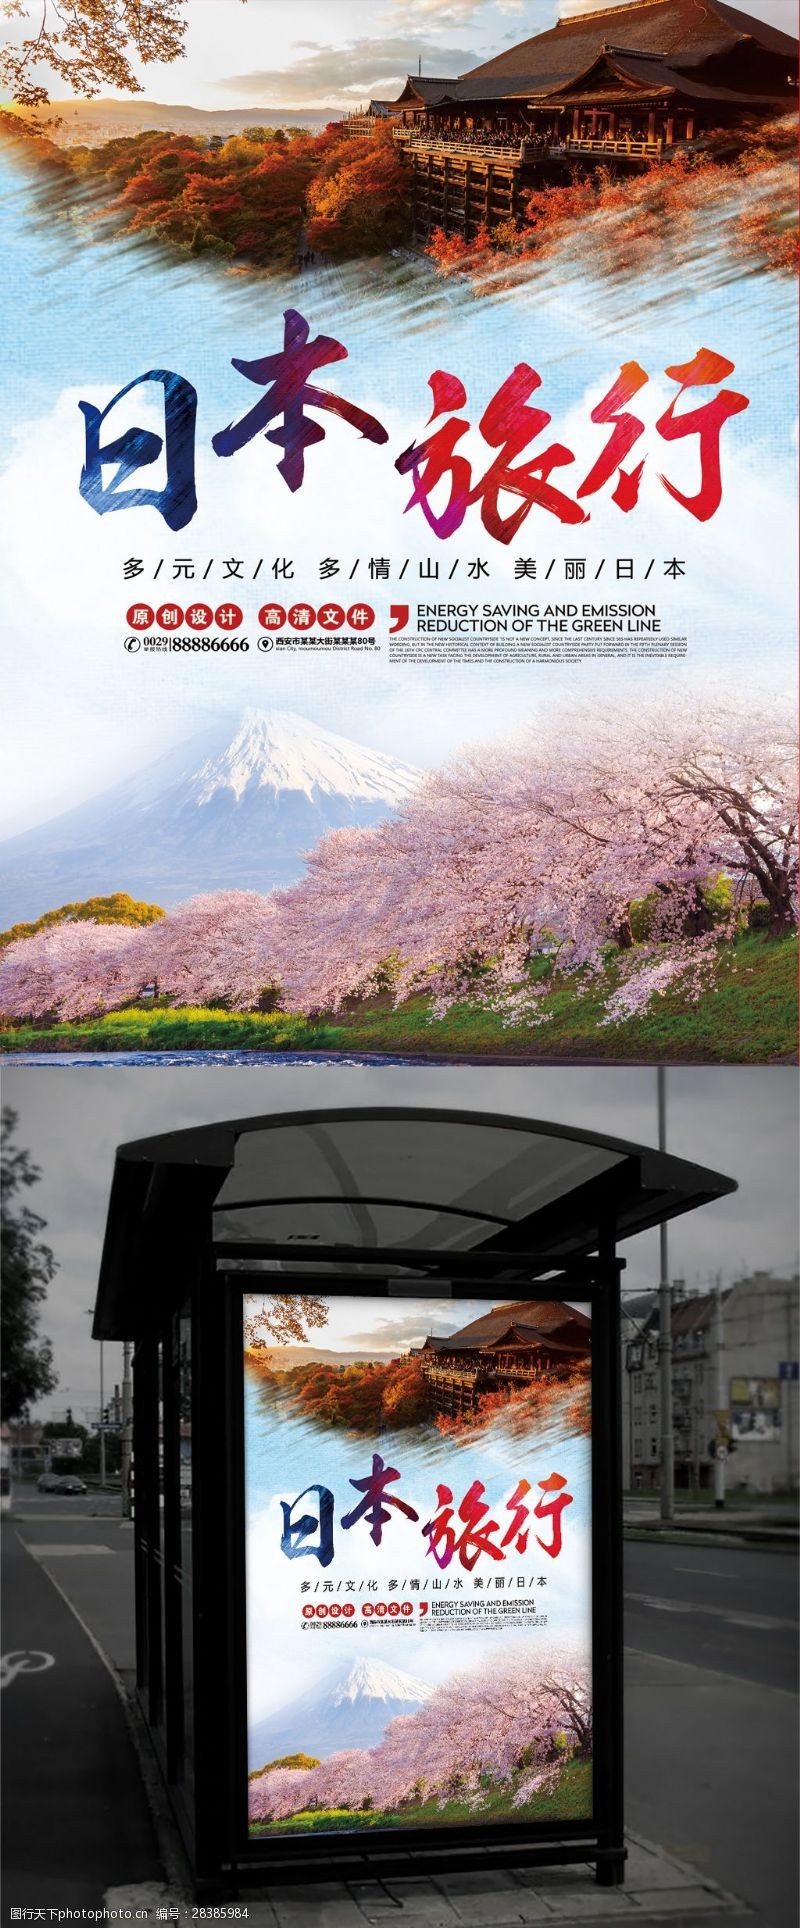 樱花旅游浪漫樱花大气日本旅游促销海报